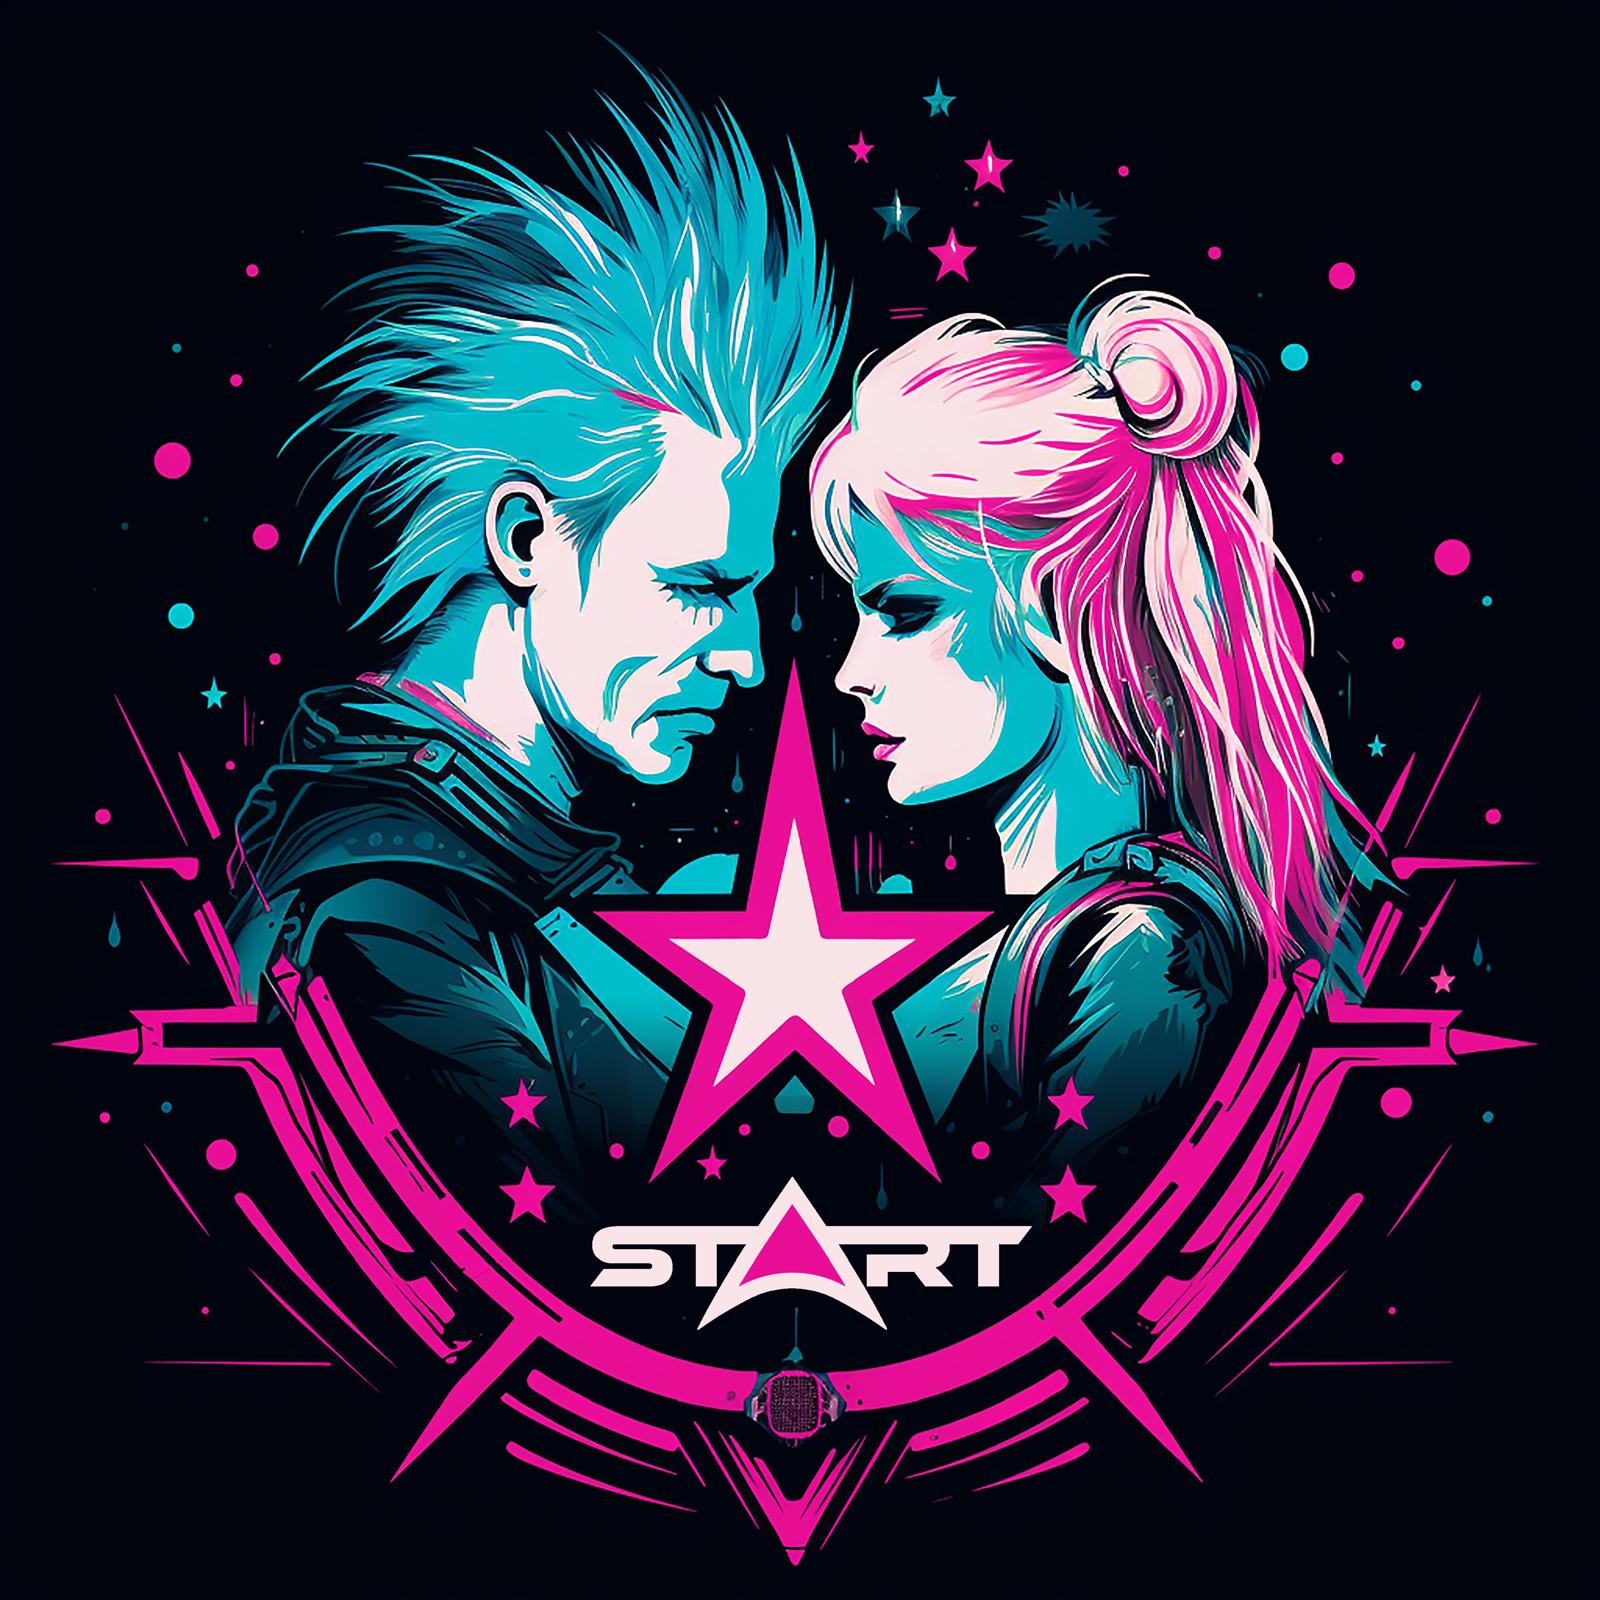 “Start”, il singolo degli stArt, è disponibile in tutti i digital store